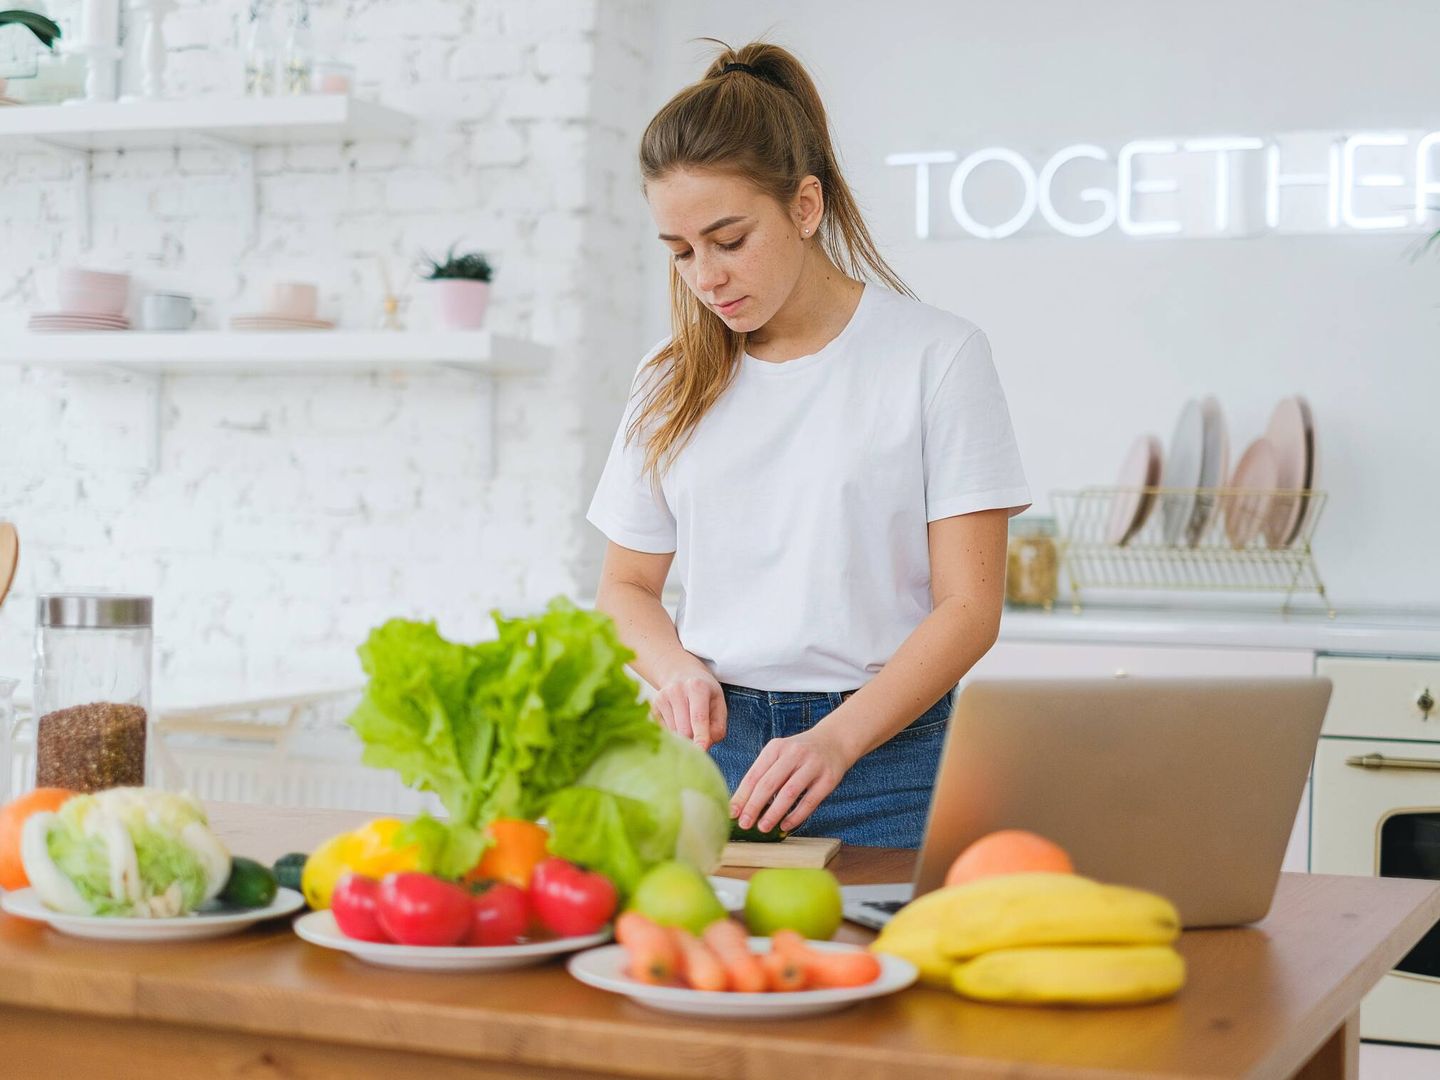 Incluir frutas y verduras de temporada cuida de nuestra salud. (Pexels/Anna Shvets)